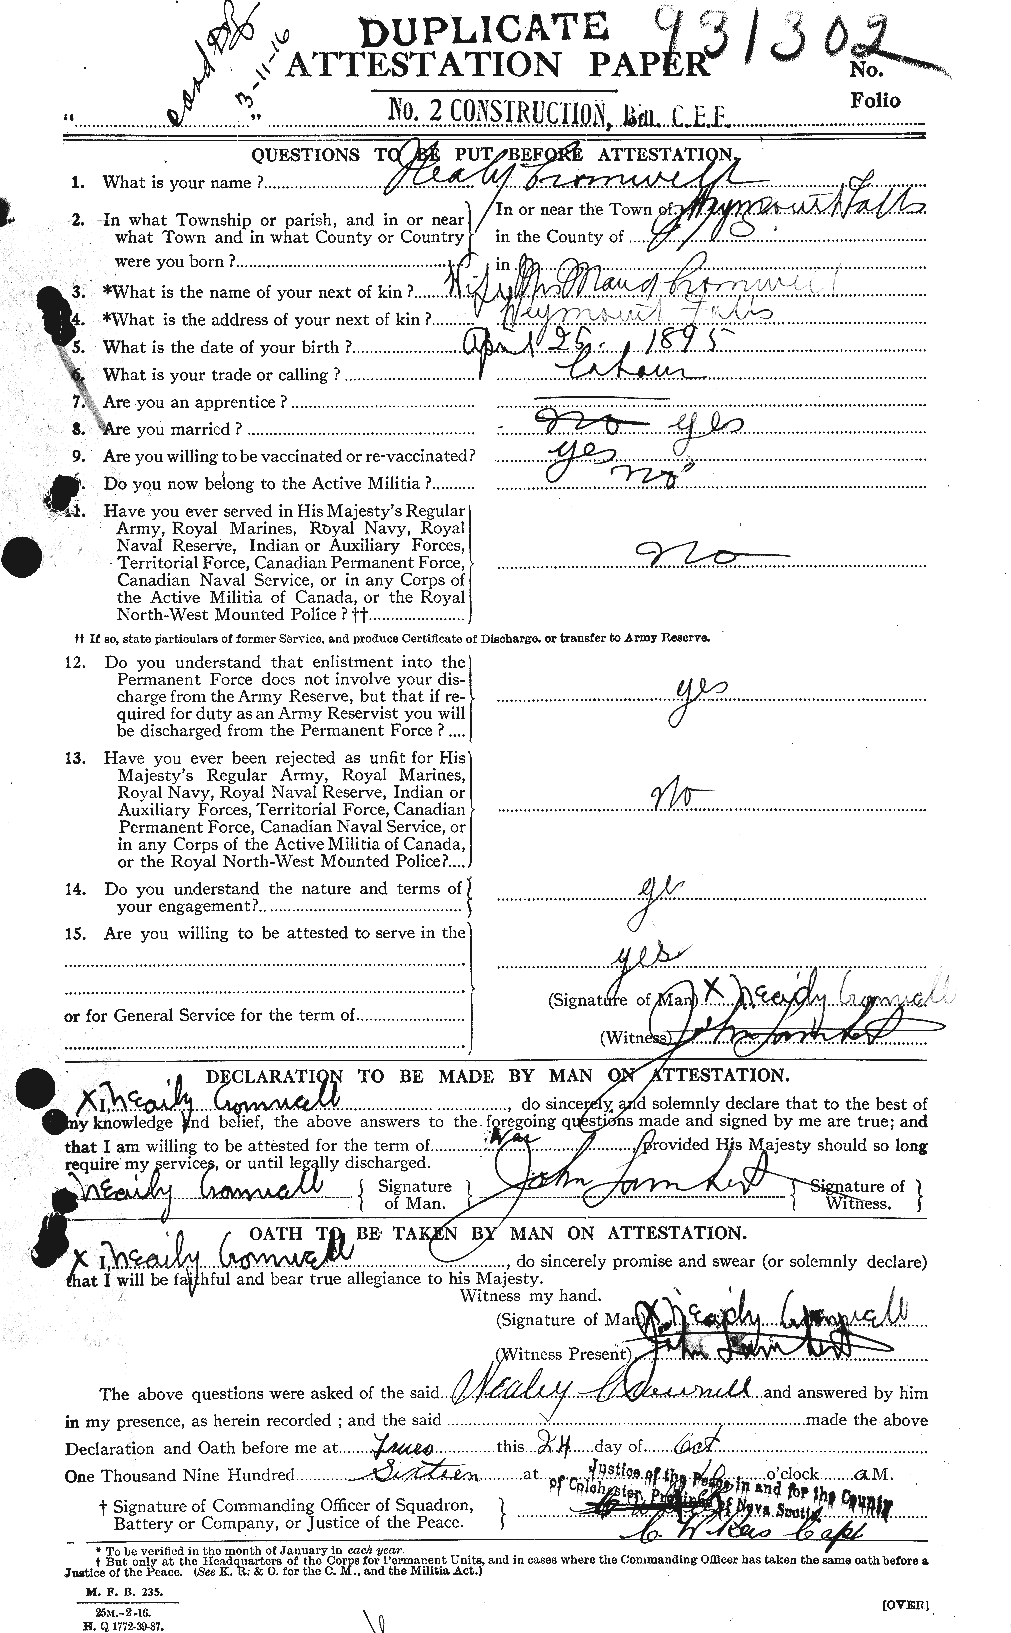 Dossiers du Personnel de la Première Guerre mondiale - CEC 064912a